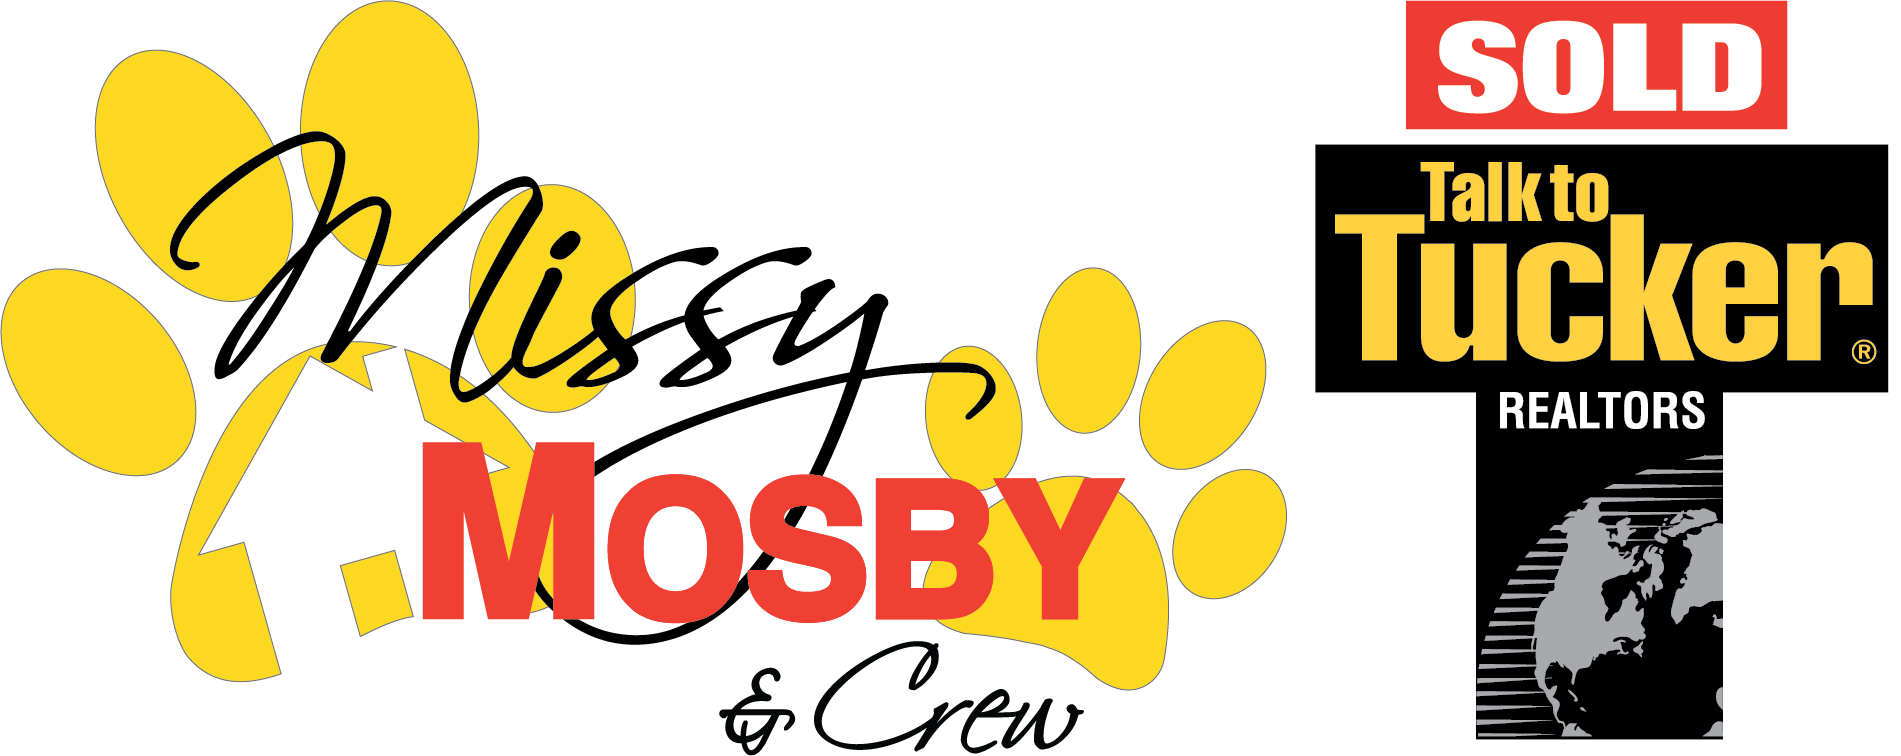 Missy Mosby